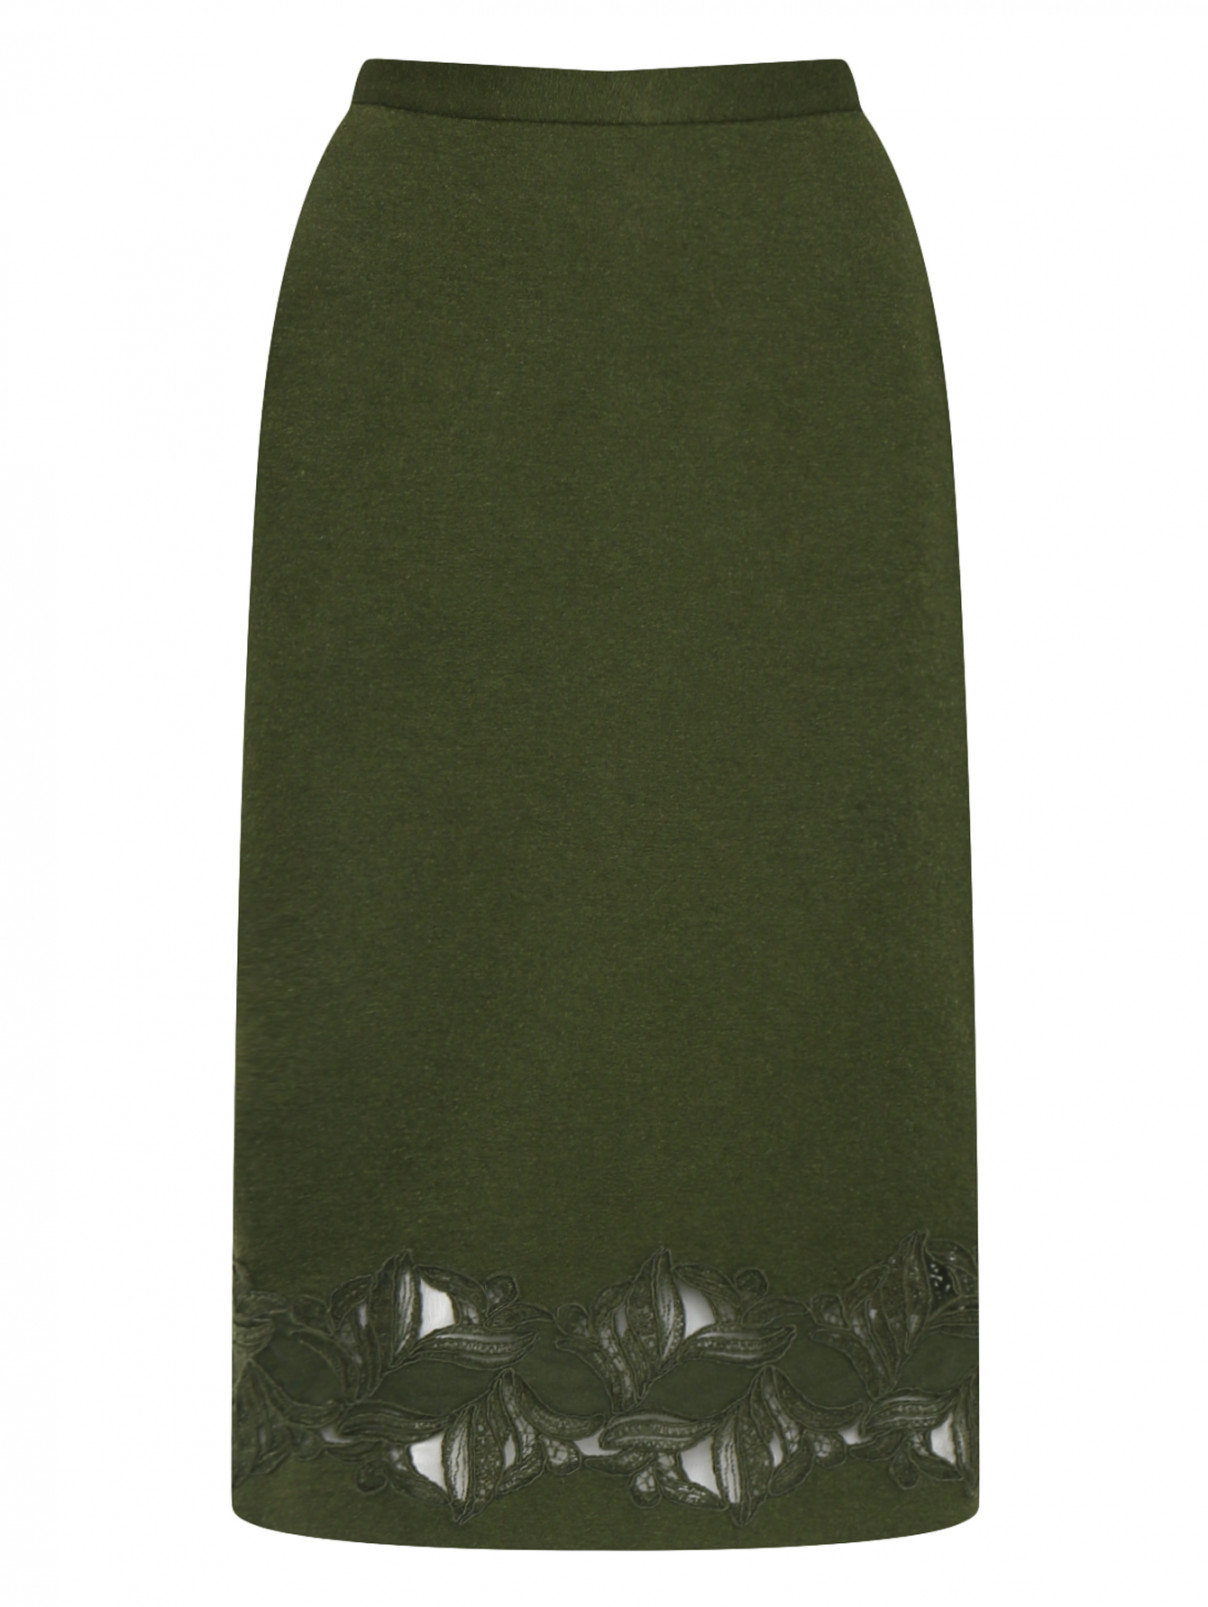 Юбка из шерсти, шелка и кашемира с кружевом Ermanno Scervino  –  Общий вид  – Цвет:  Зеленый